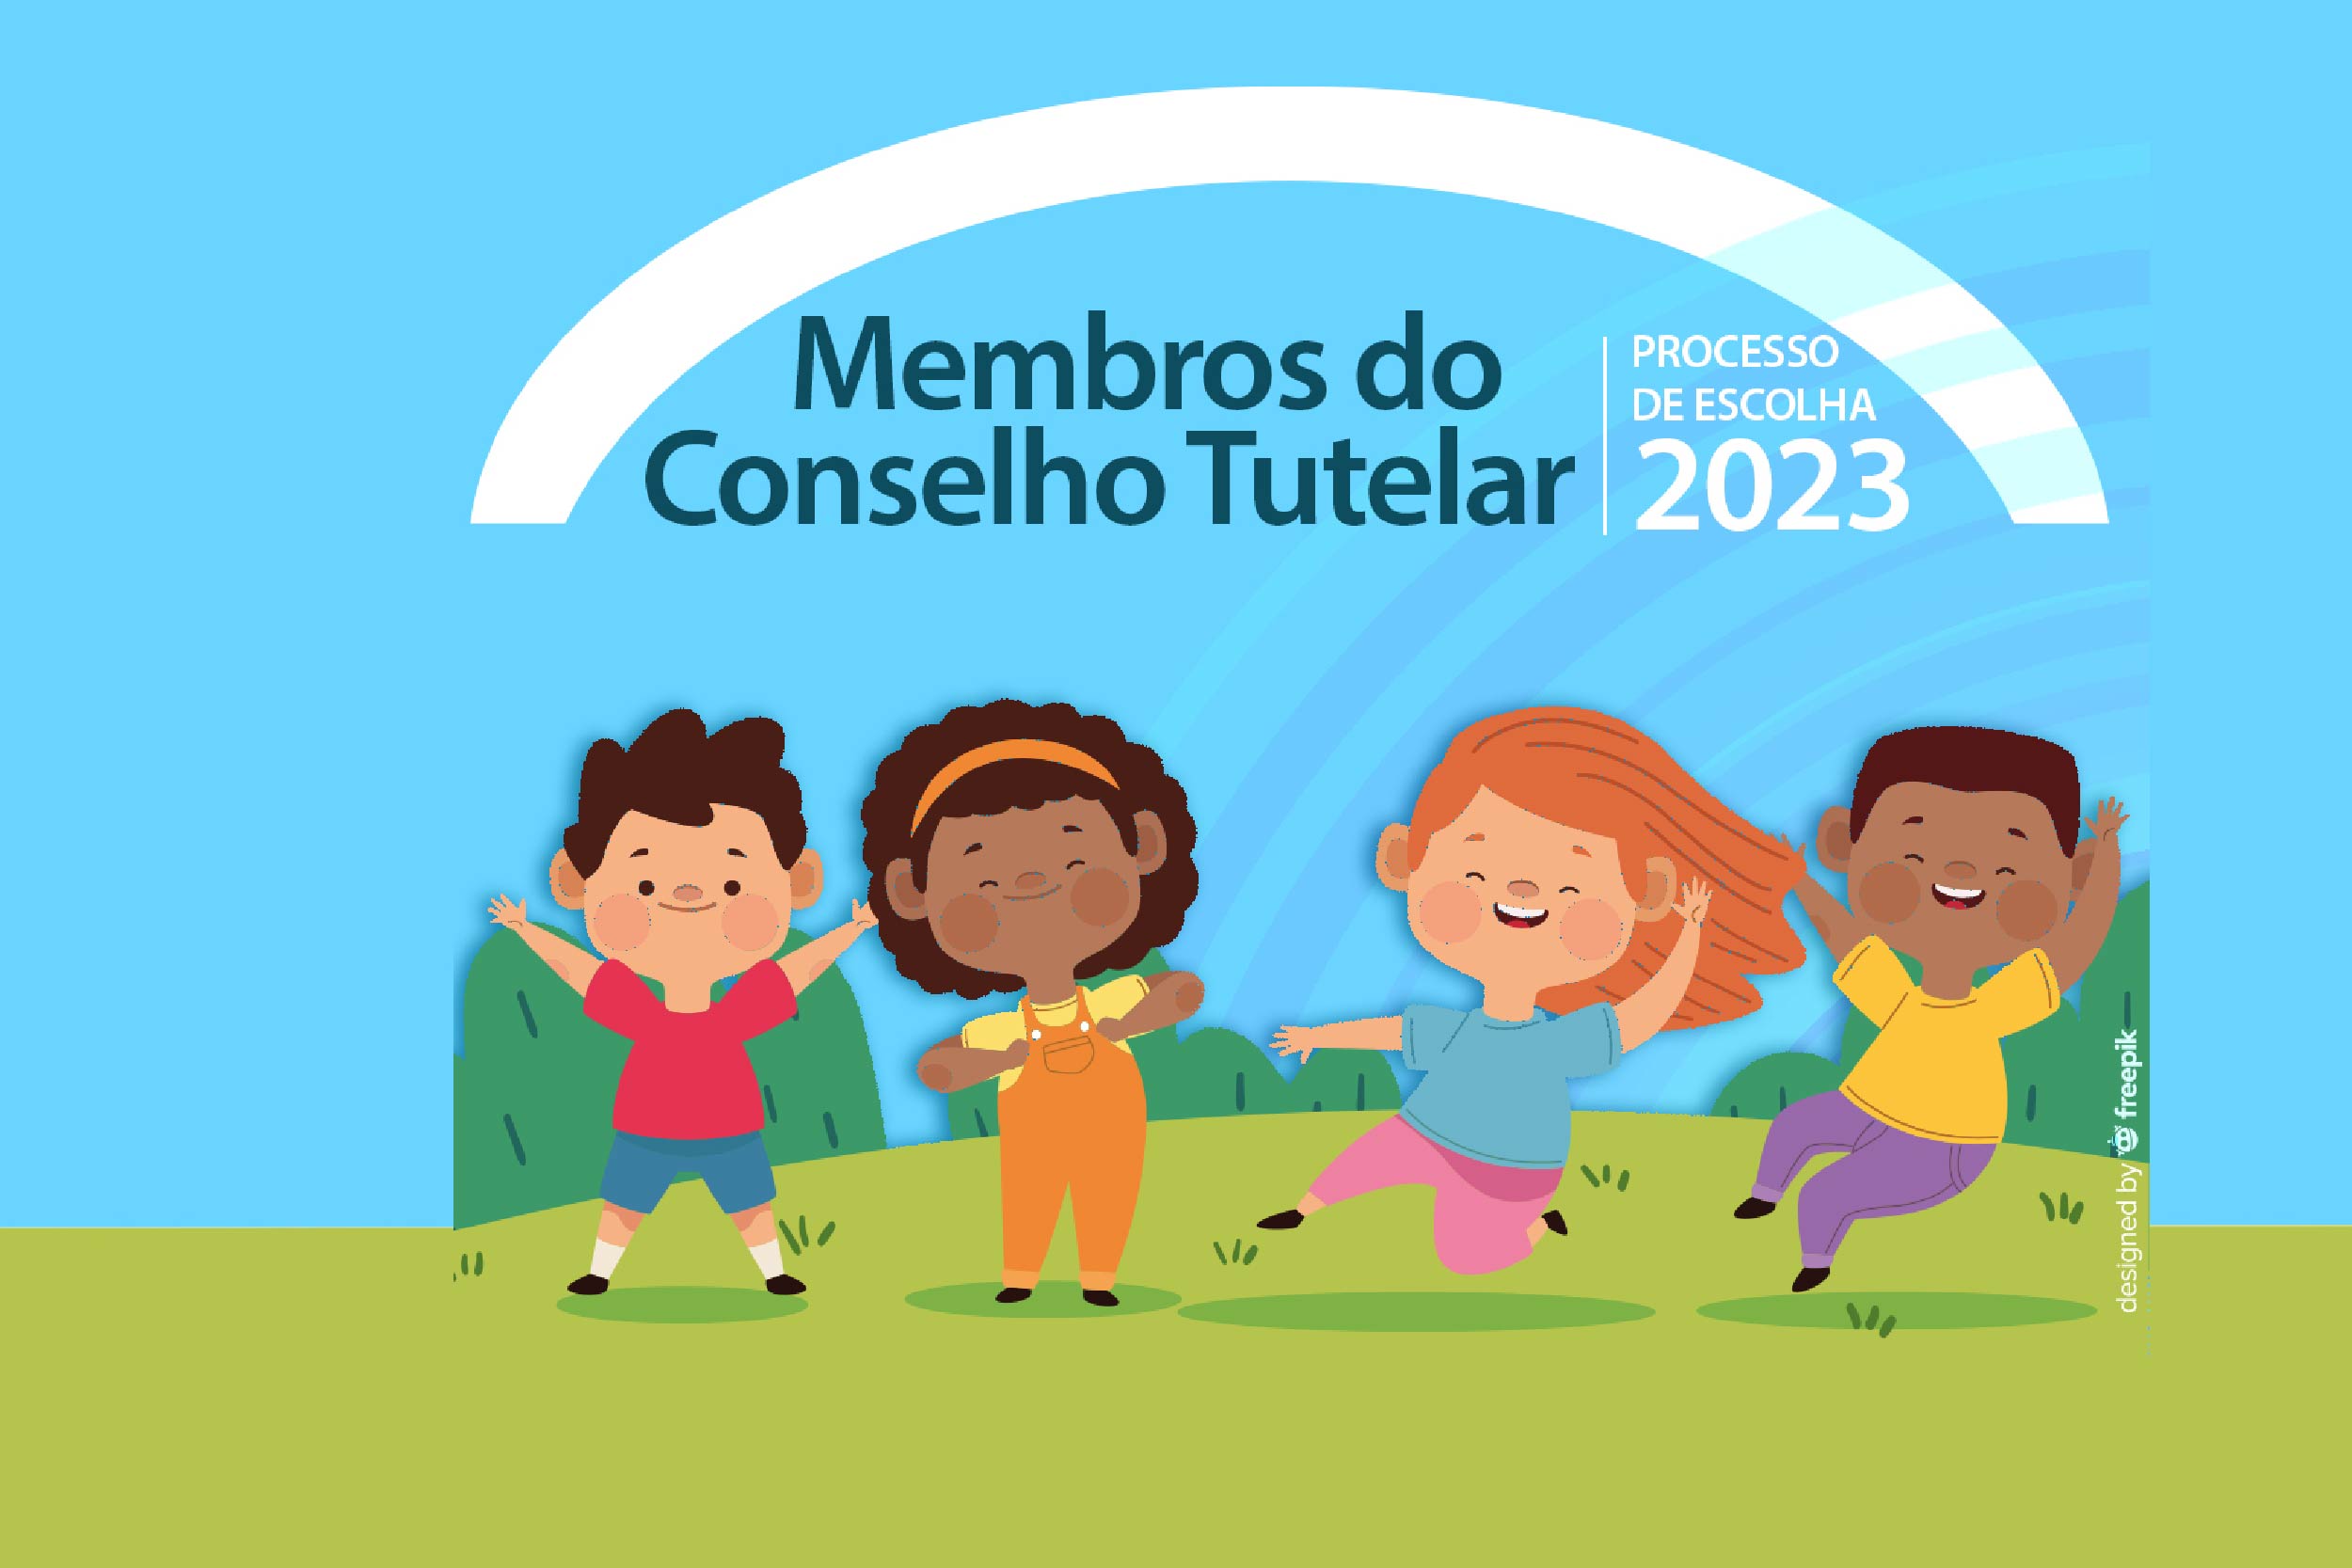 Ilustração de crianças se divertindo sobre gramado tem sobrepostos os dizeres Membros do Conselho Tutelar, processo de escolha 2023